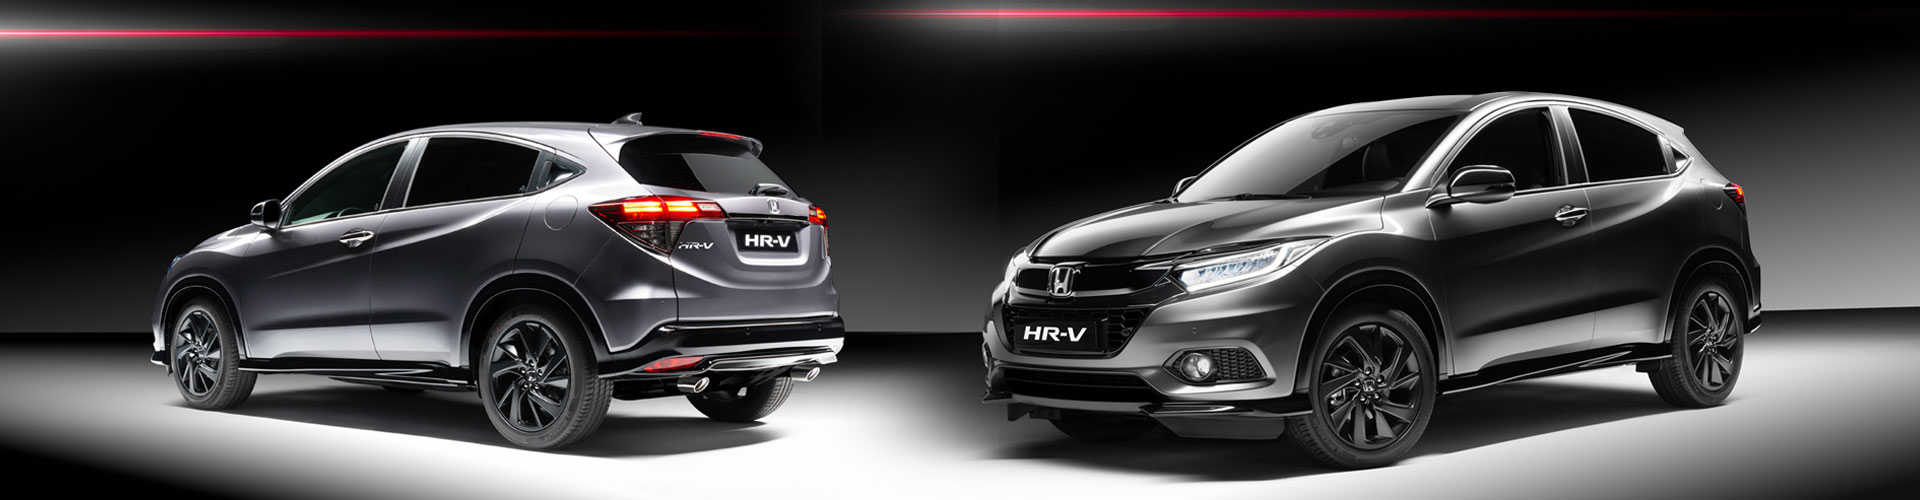 Cox Honda announces details for new Honda HR-V Sport